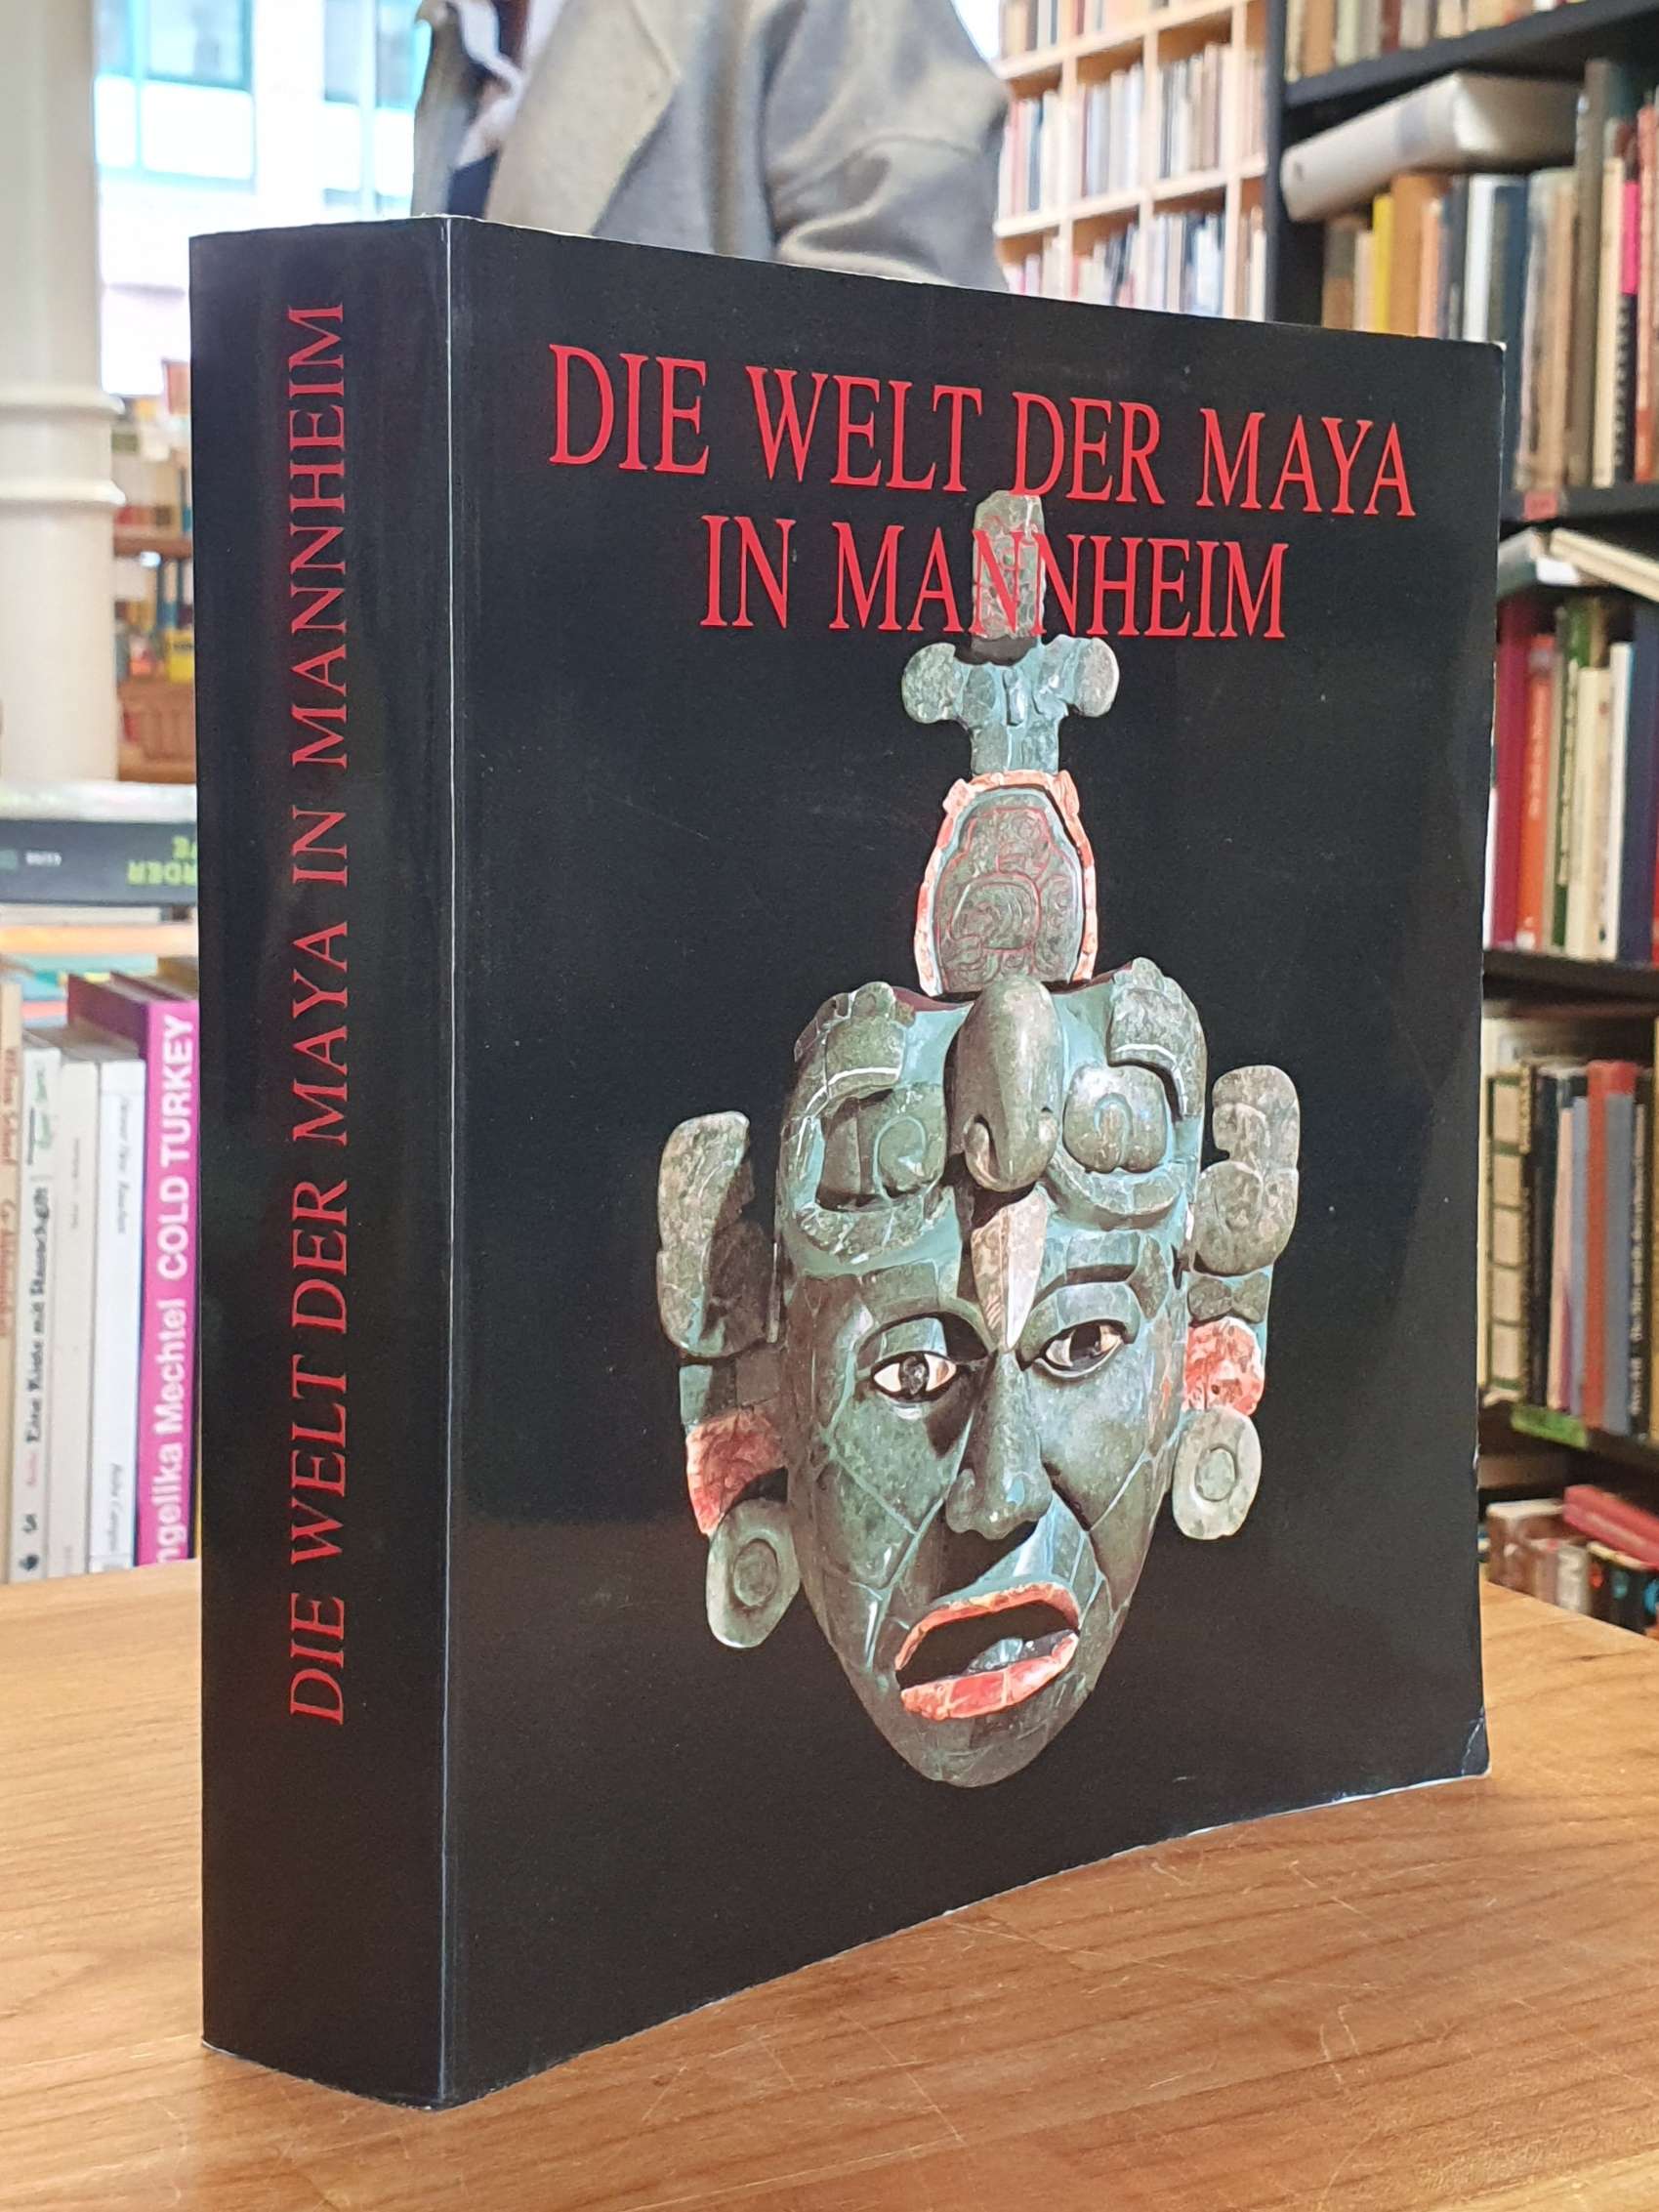 Reiss-Museum der Stadt Mannheim, Die Welt der Maya [in Mannheim],